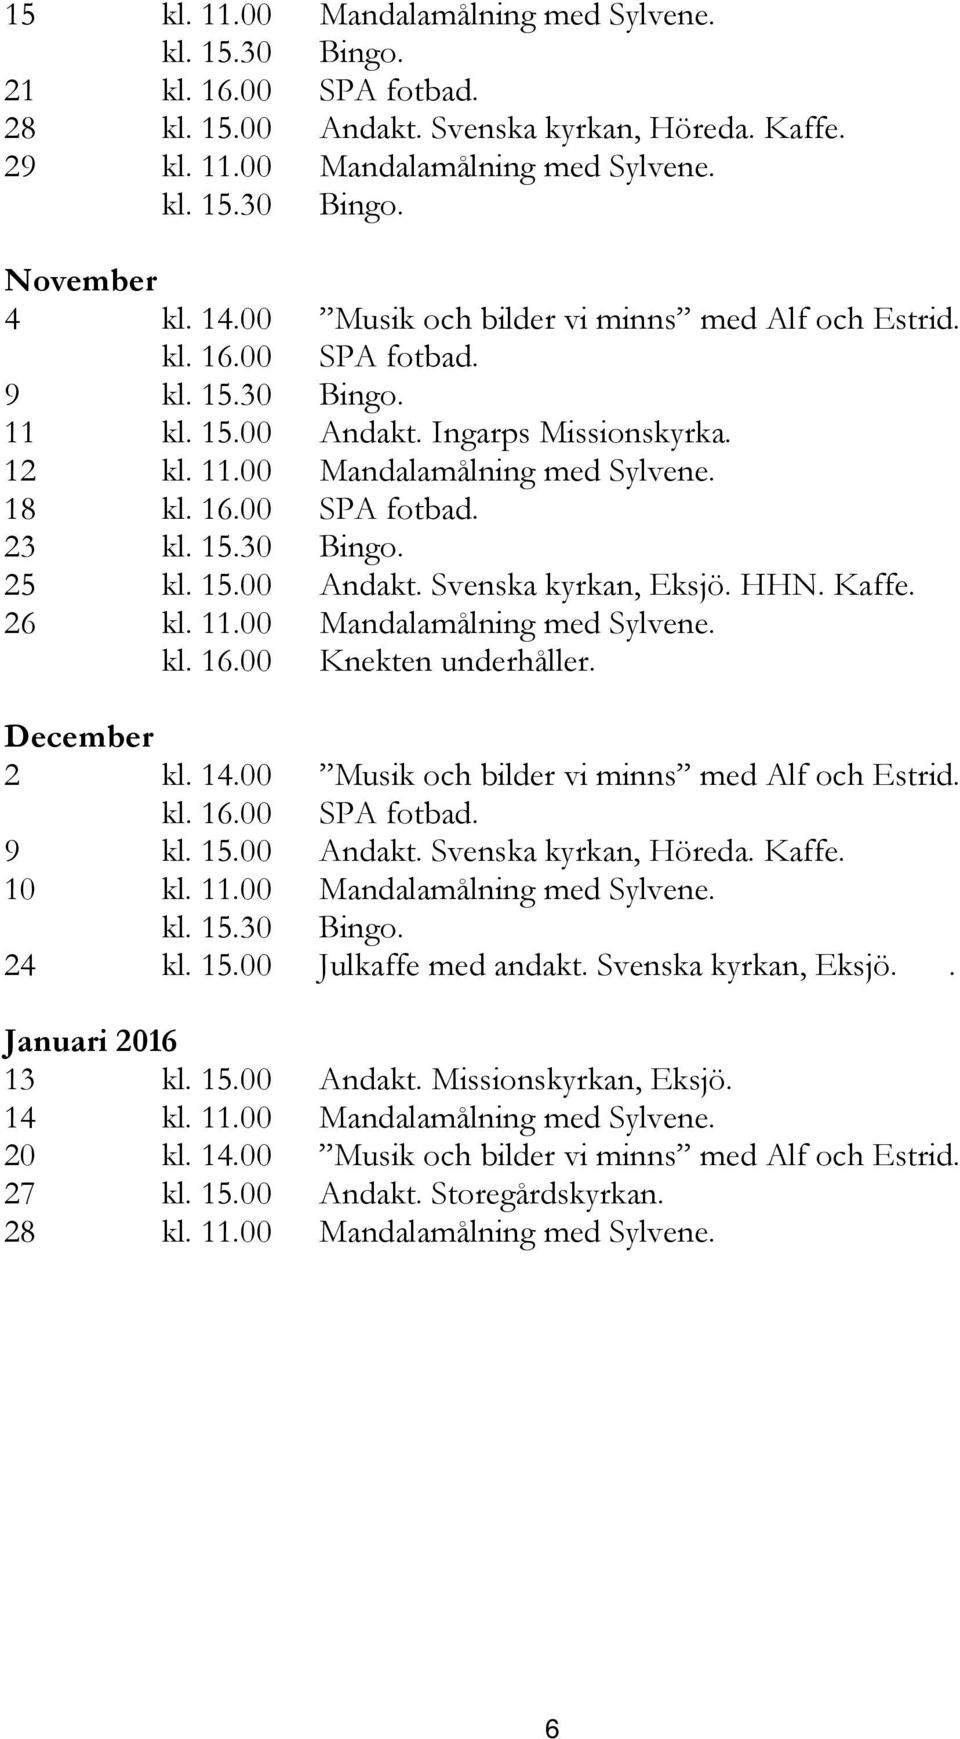 15.30 Bingo. 25 kl. 15.00 Andakt. Svenska kyrkan, Eksjö. HHN. Kaffe. 26 kl. 11.00 Mandalamålning med Sylvene. kl. 16.00 Knekten underhåller. December 2 kl. 14.